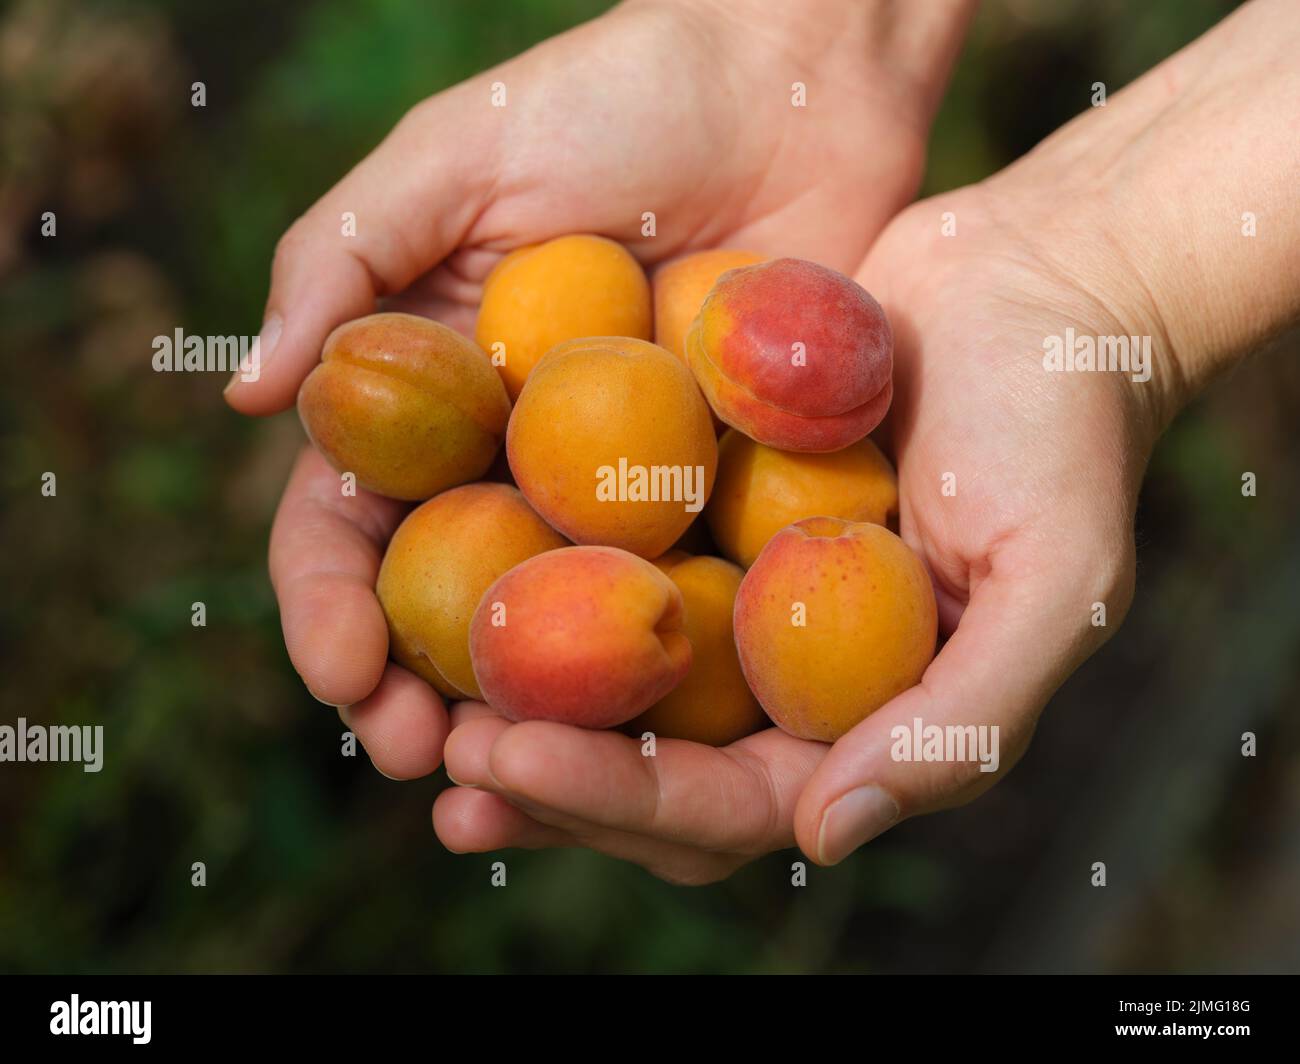 Abricots fraîchement récoltés dans les mains. Gros plan. Banque D'Images